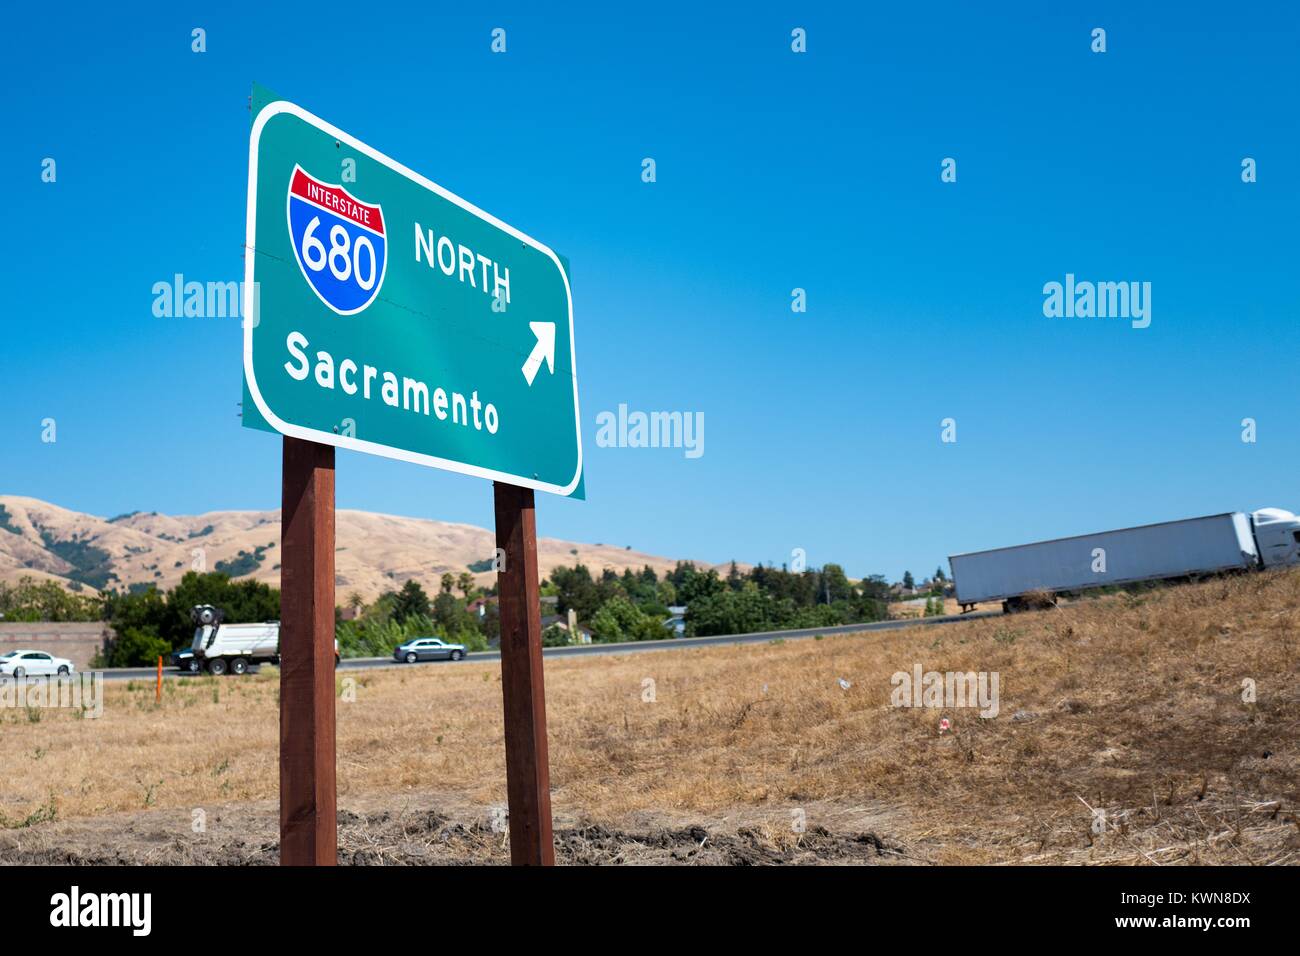 La signalisation pour les États-Unis l'Interstate 680 vers le nord de l'autoroute en direction de Sacramento, avec des voitures et camions entrée de l'autoroute à la Silicon Valley ville de Fremont, Californie, le 25 juillet 2017. Banque D'Images